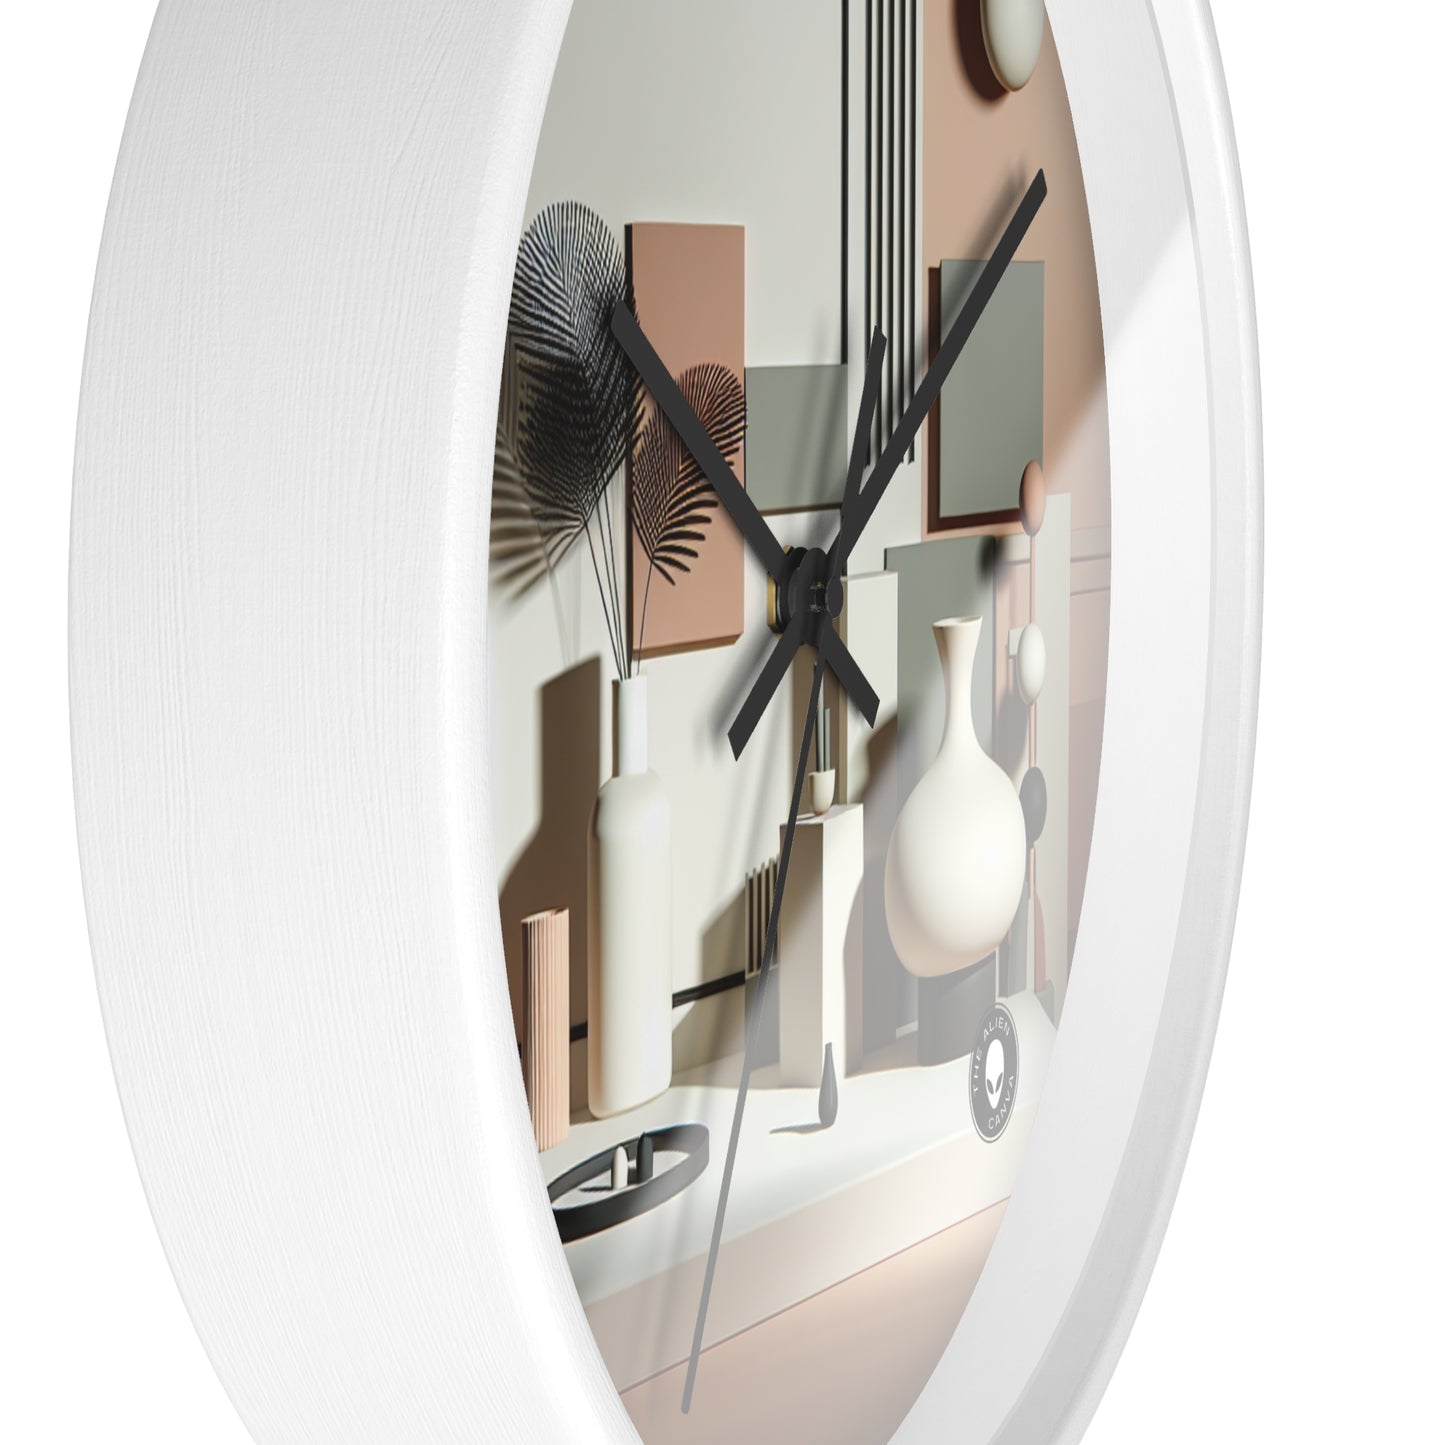 "Harmony in Geometry: A Minimalist Digital Art Exploration" - The Alien Wall Clock Post-minimalism